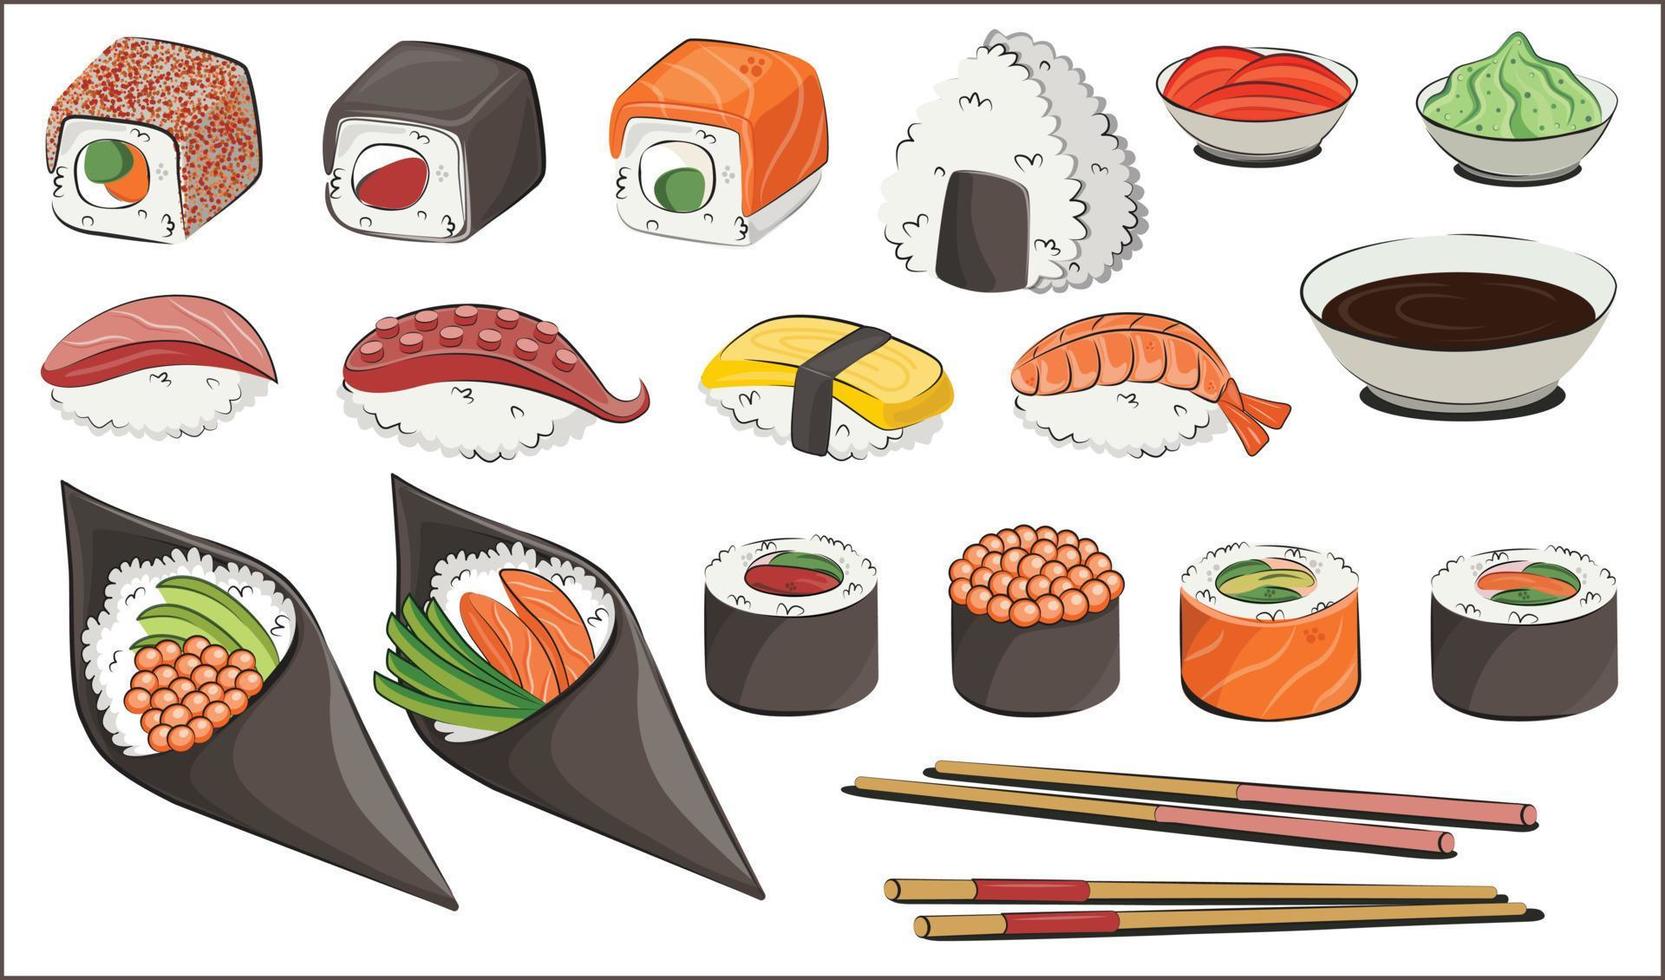 japanskt kök, fast mat. för restaurangmenyer och affischer. leveransplatser vektor platt illustration isolerad på vit bakgrund. sushi rullar onigiri sojasås set. lagerbild.